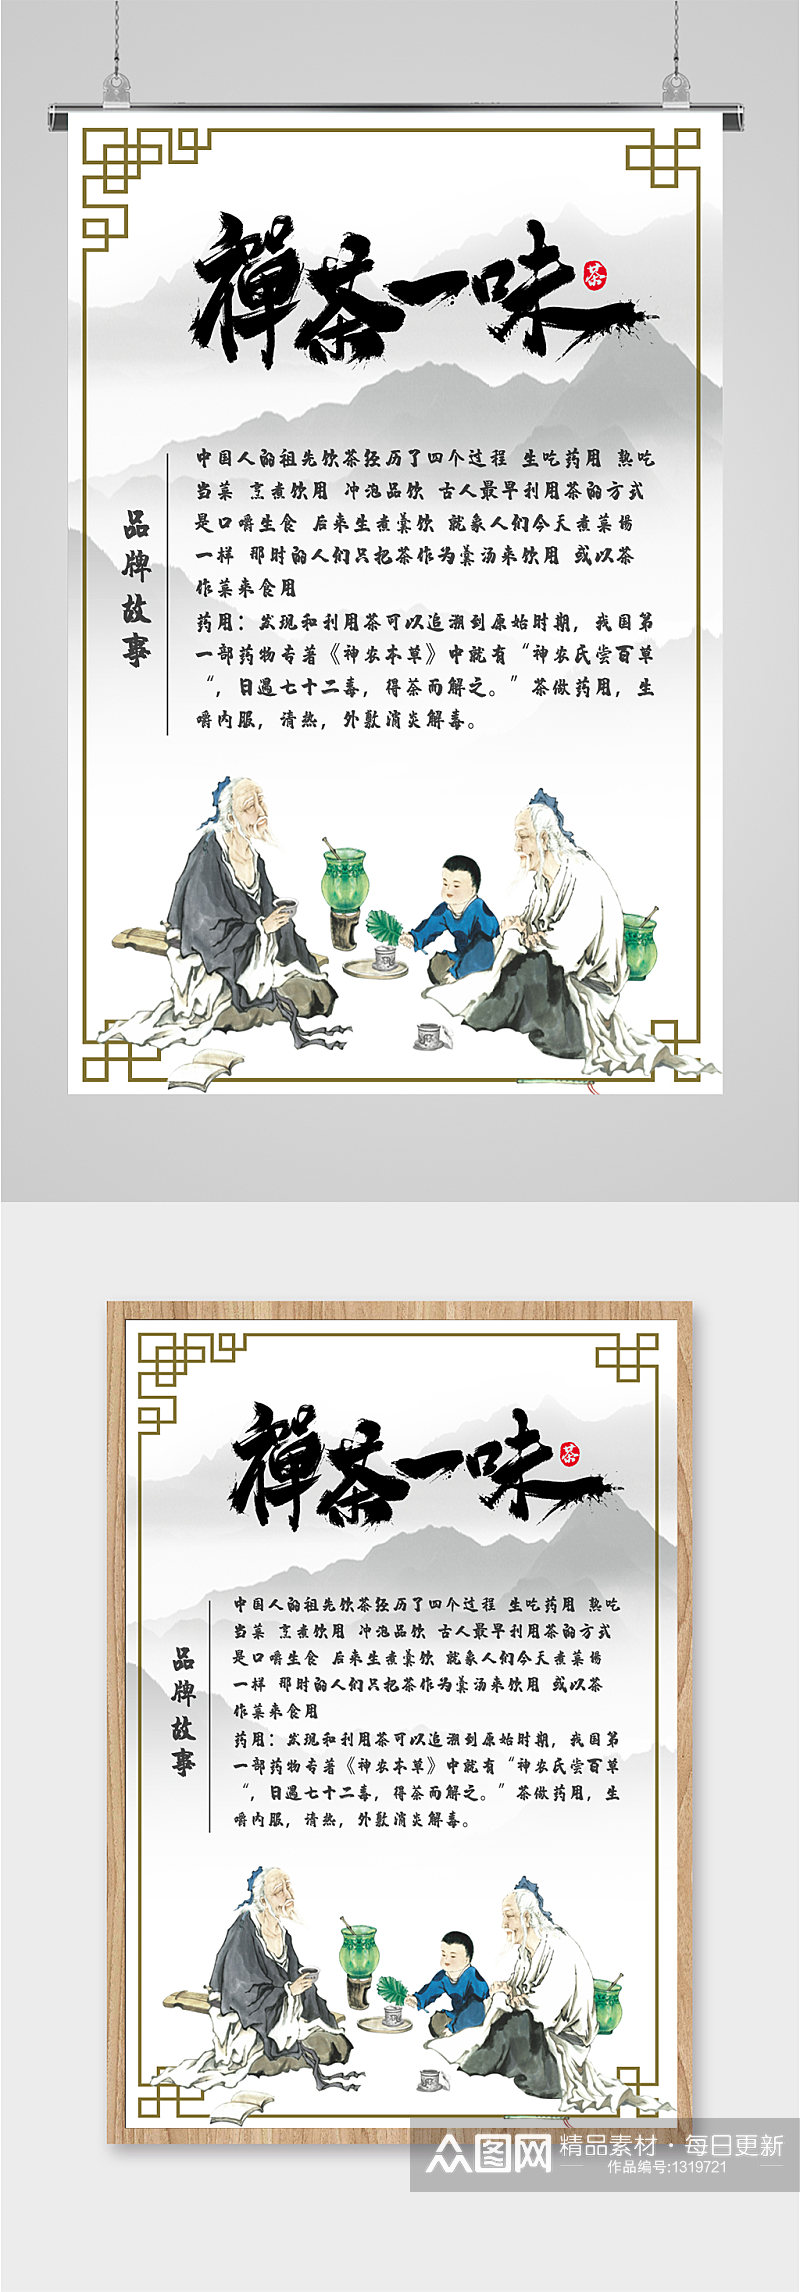 禅茶品牌故事宣传海报素材